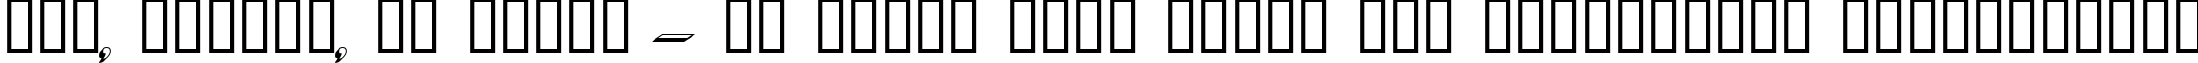 Пример написания шрифтом Dumbledor 3 3D текста на украинском